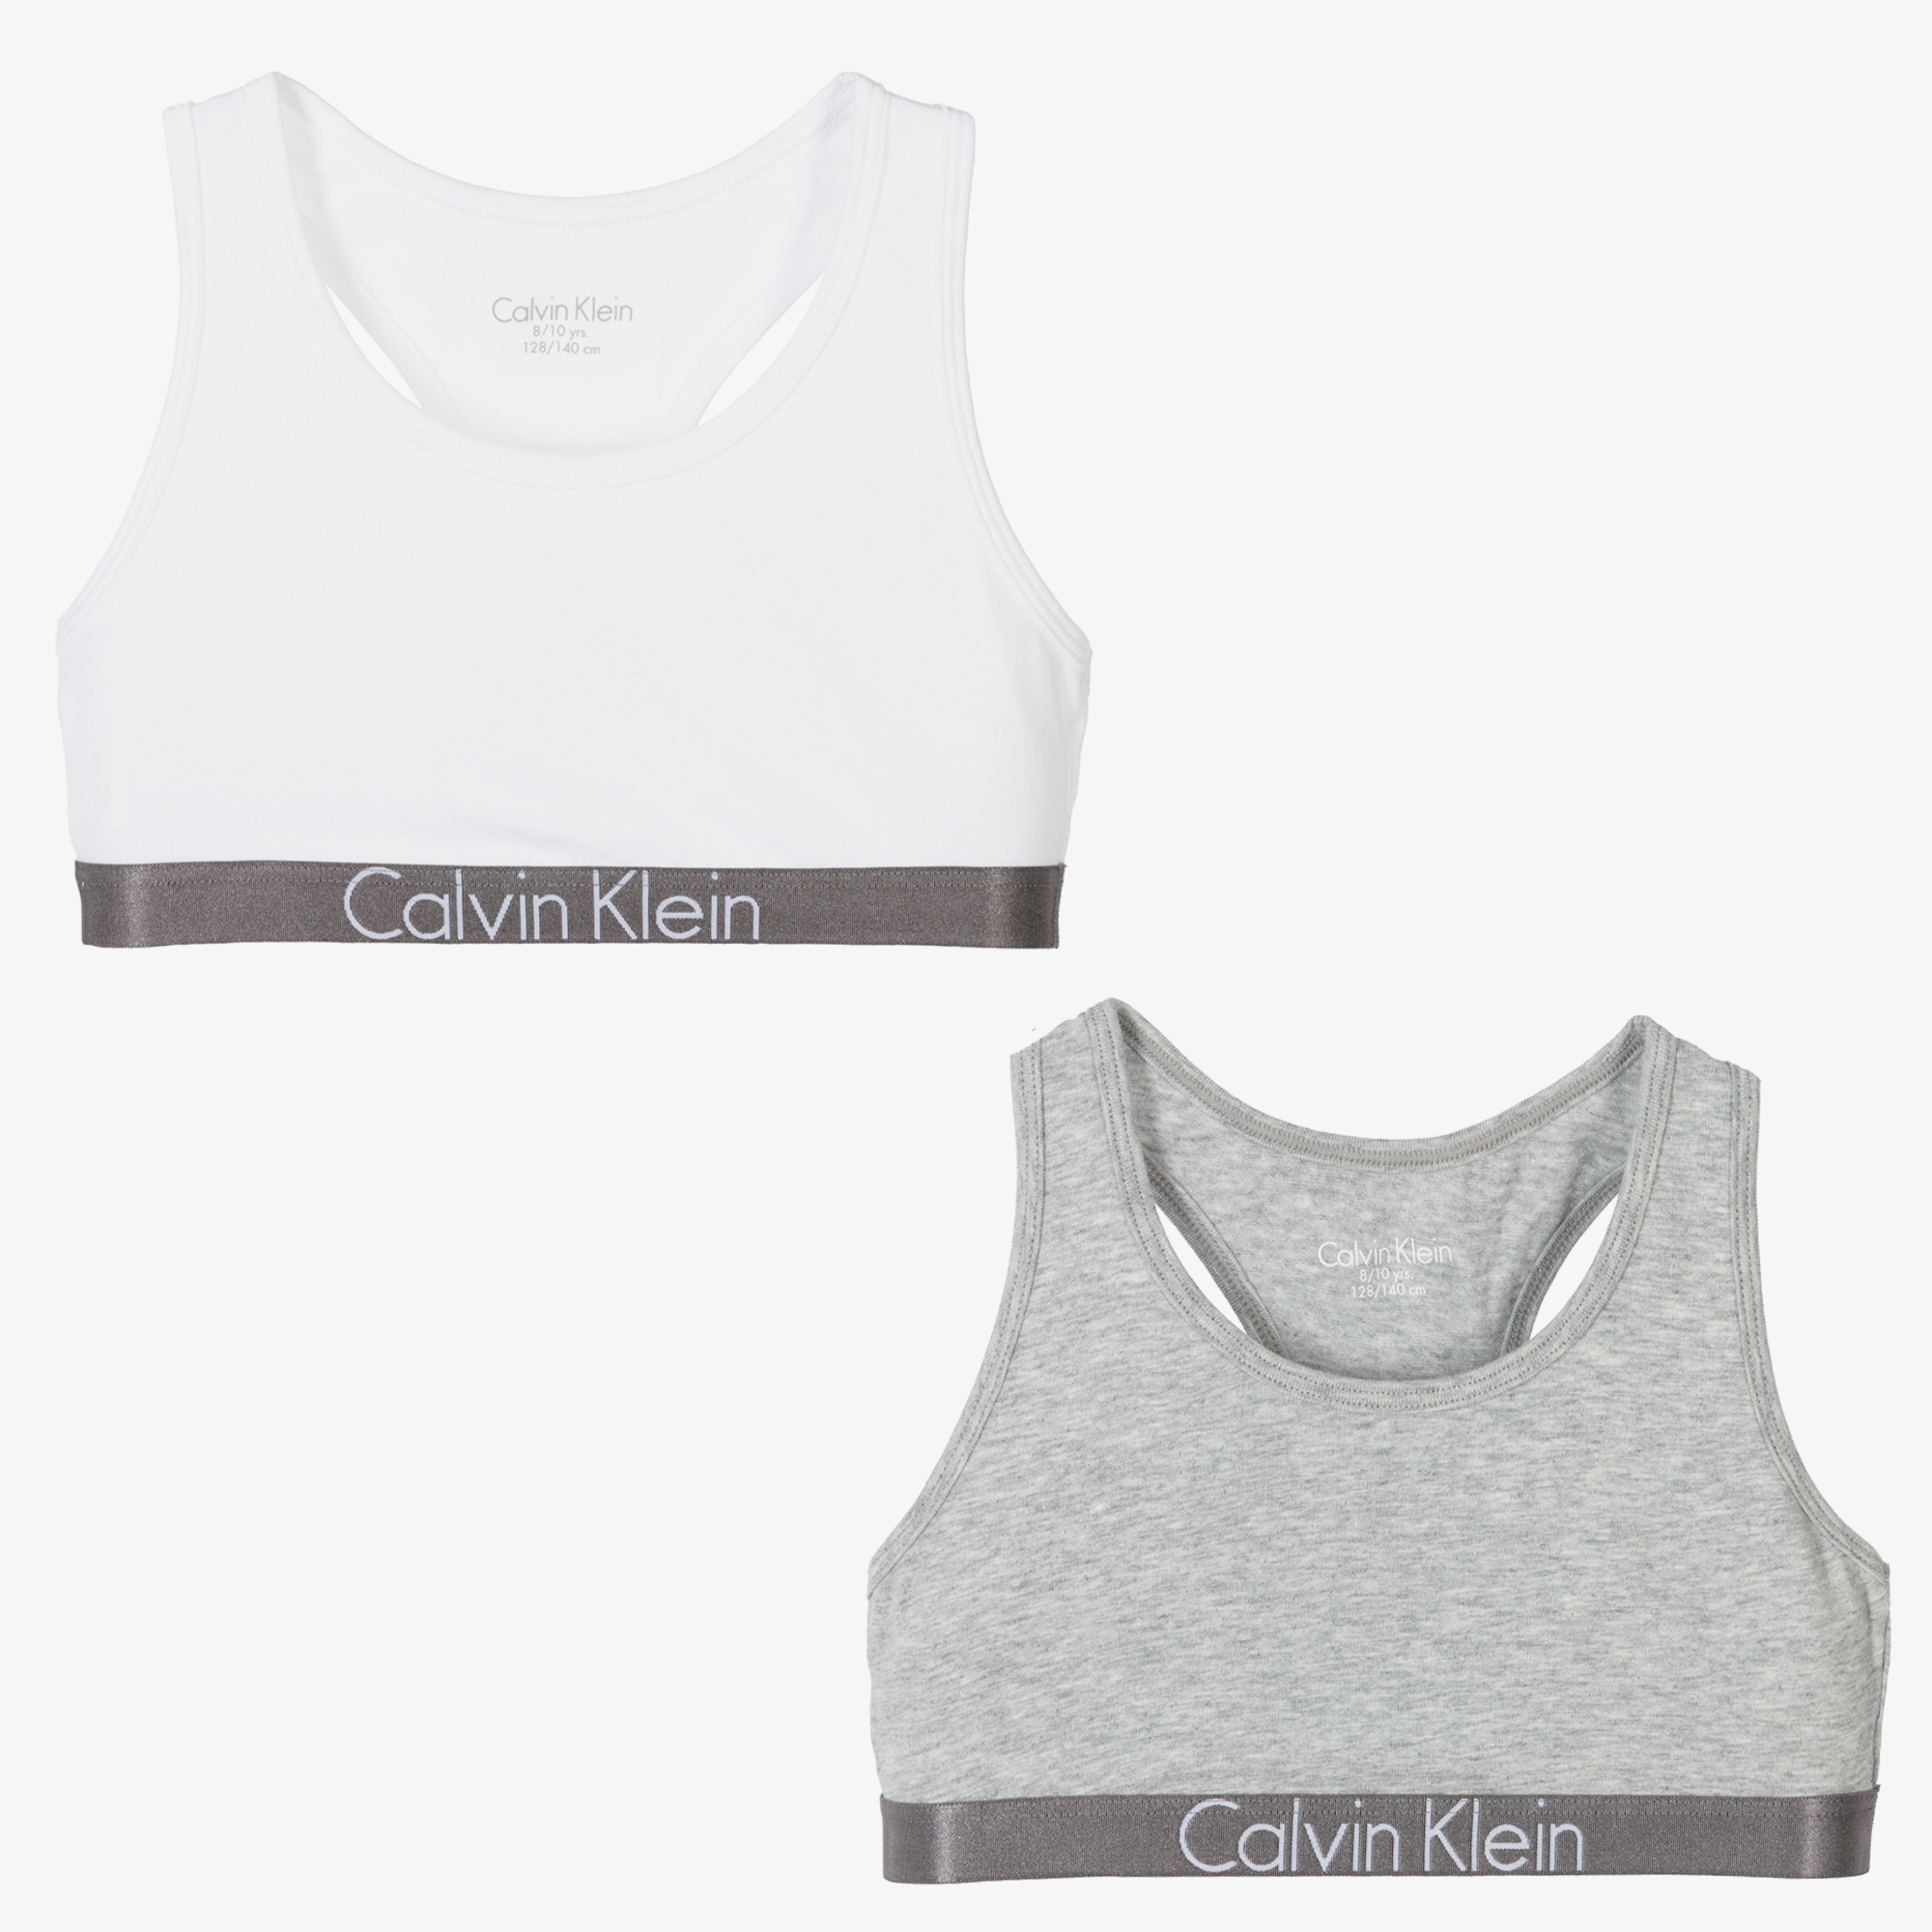 Calvin Klein - Grey & White Cotton Bra Tops (2 Pack)